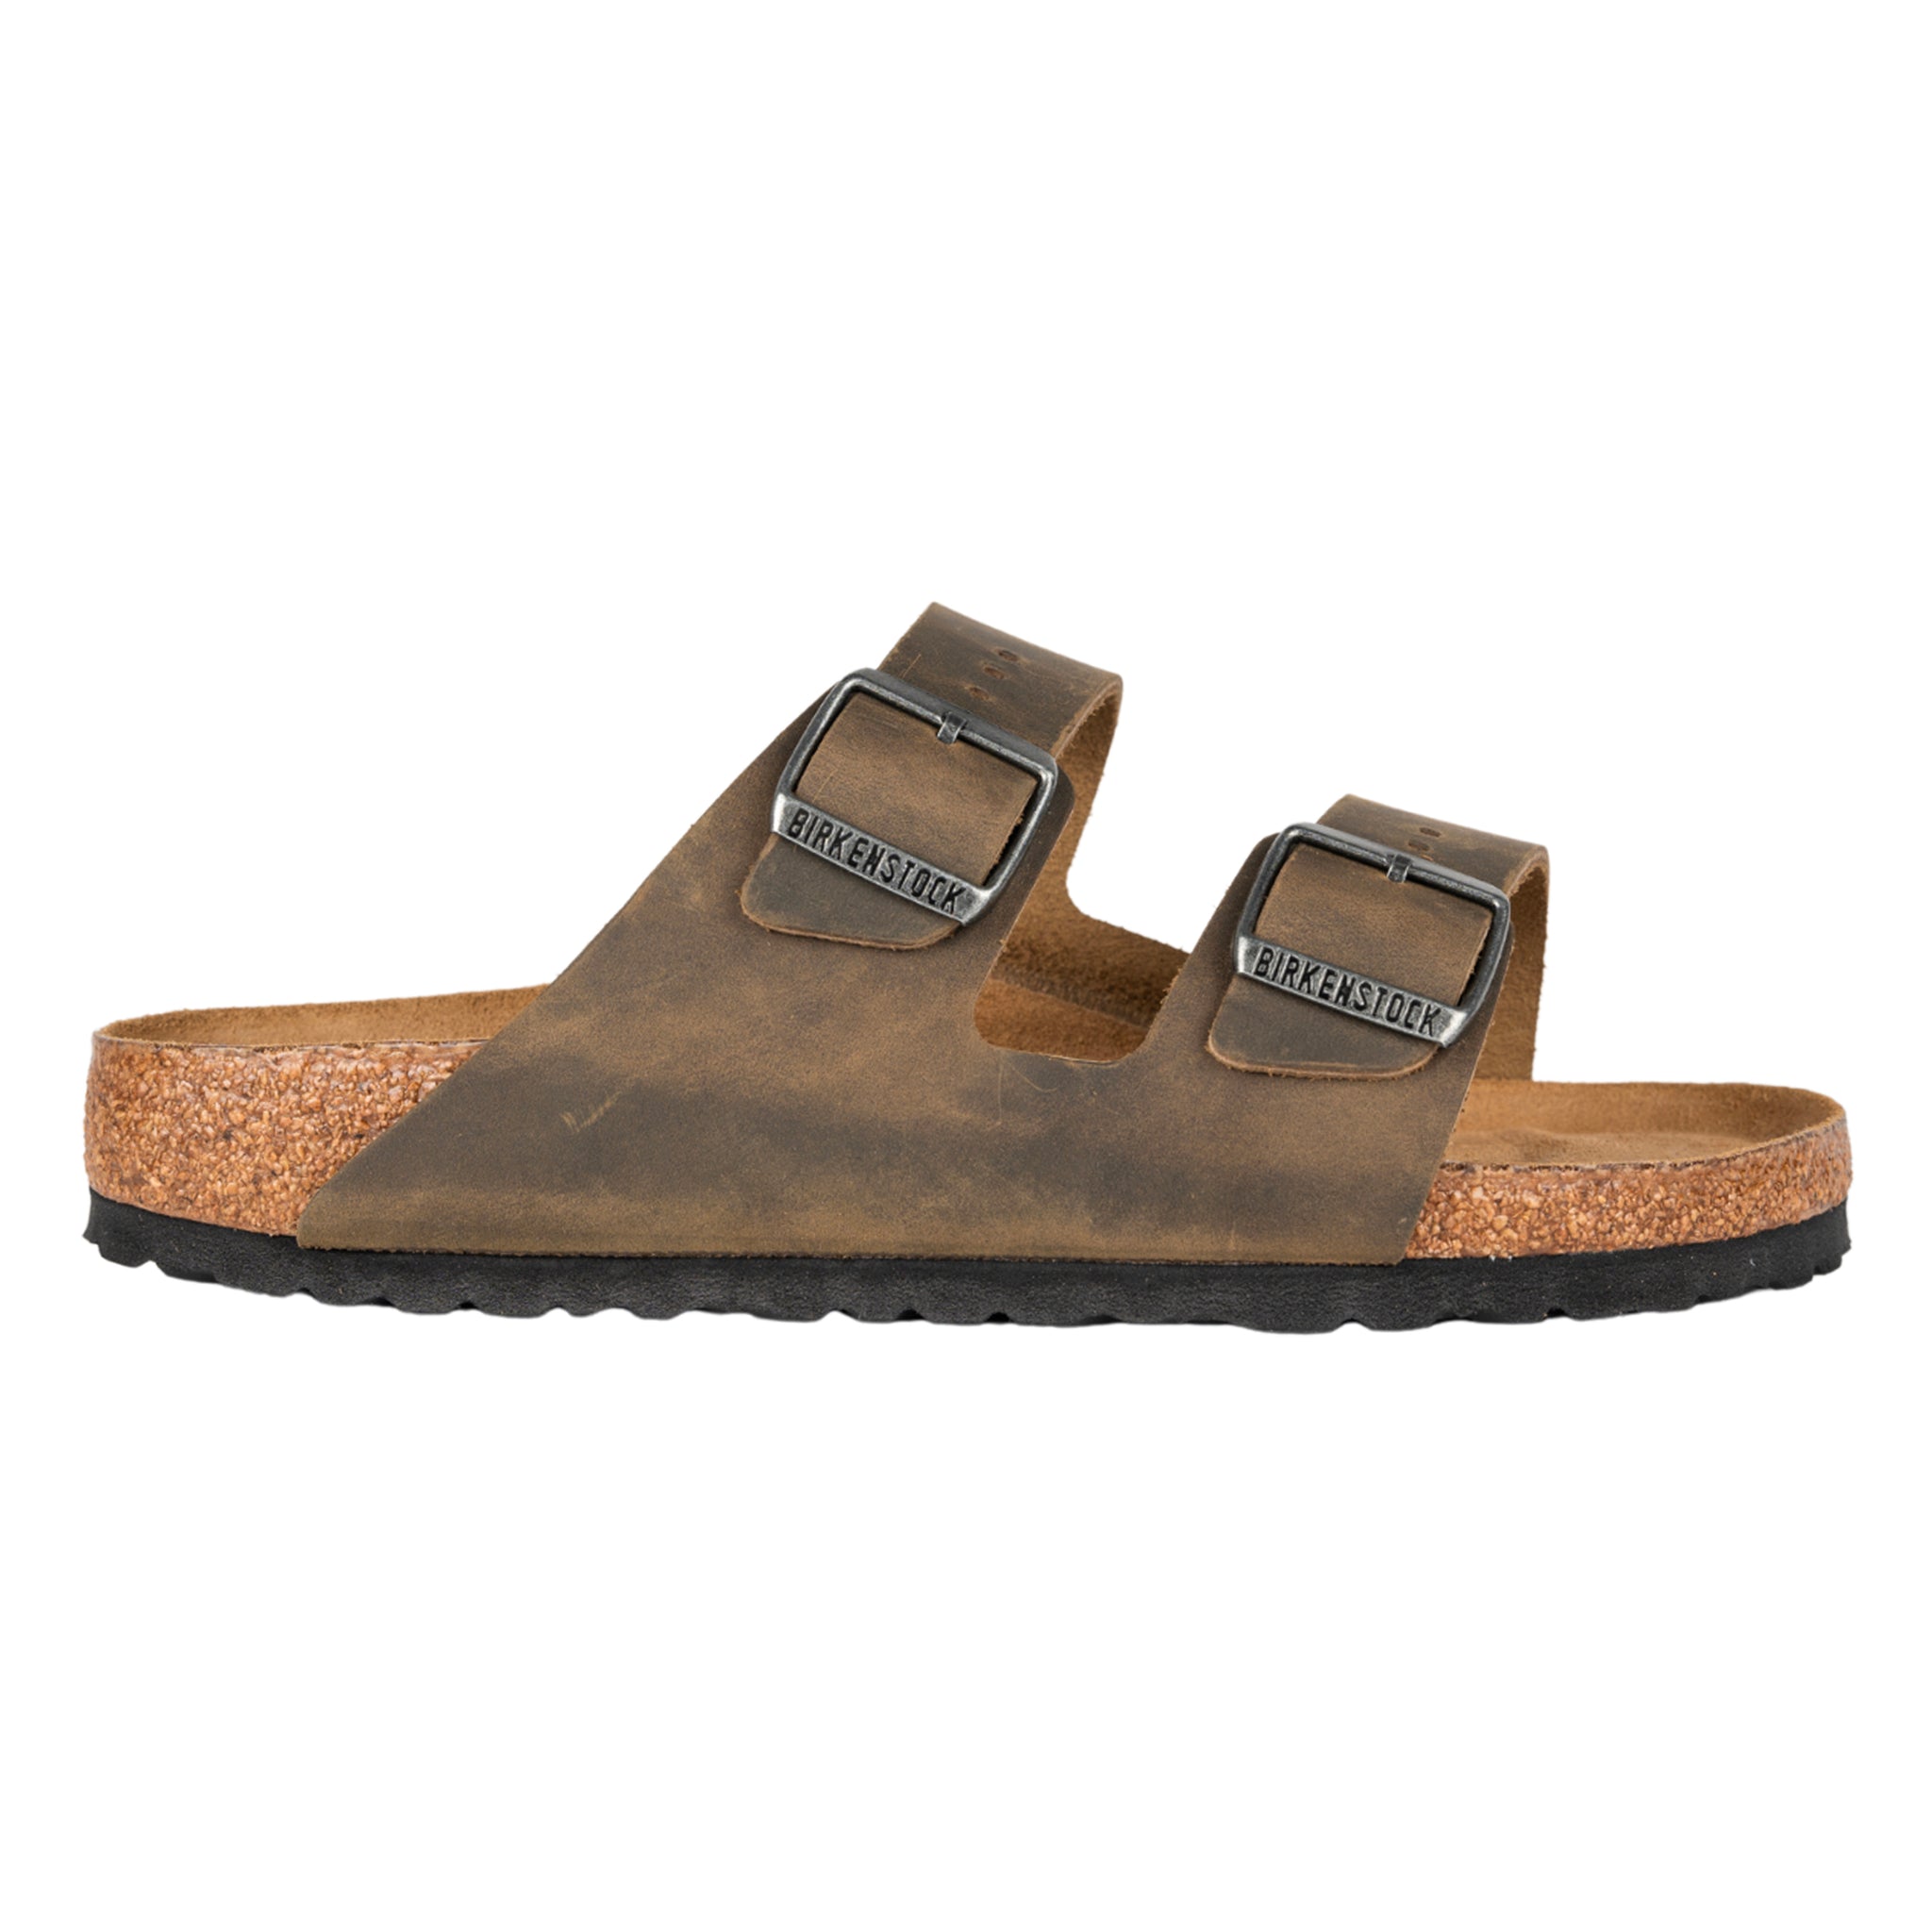 Arizona faded sandalo khaki in pelle oliata